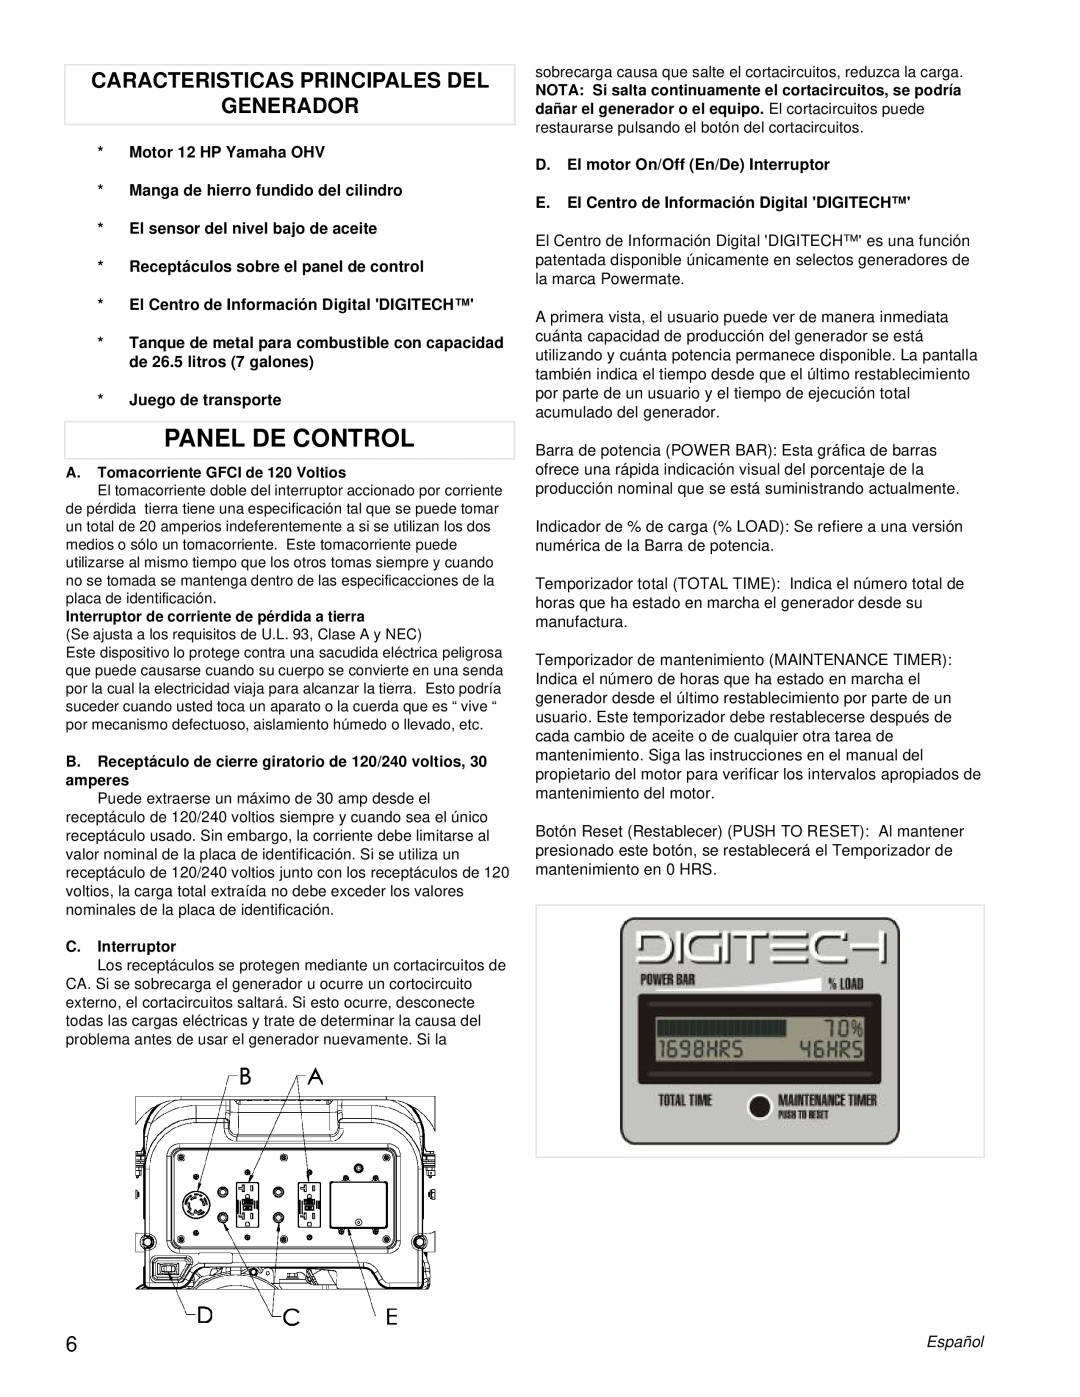 Powermate PM0606750 manual Panel De Control, Caracteristicas Principales Del Generador 